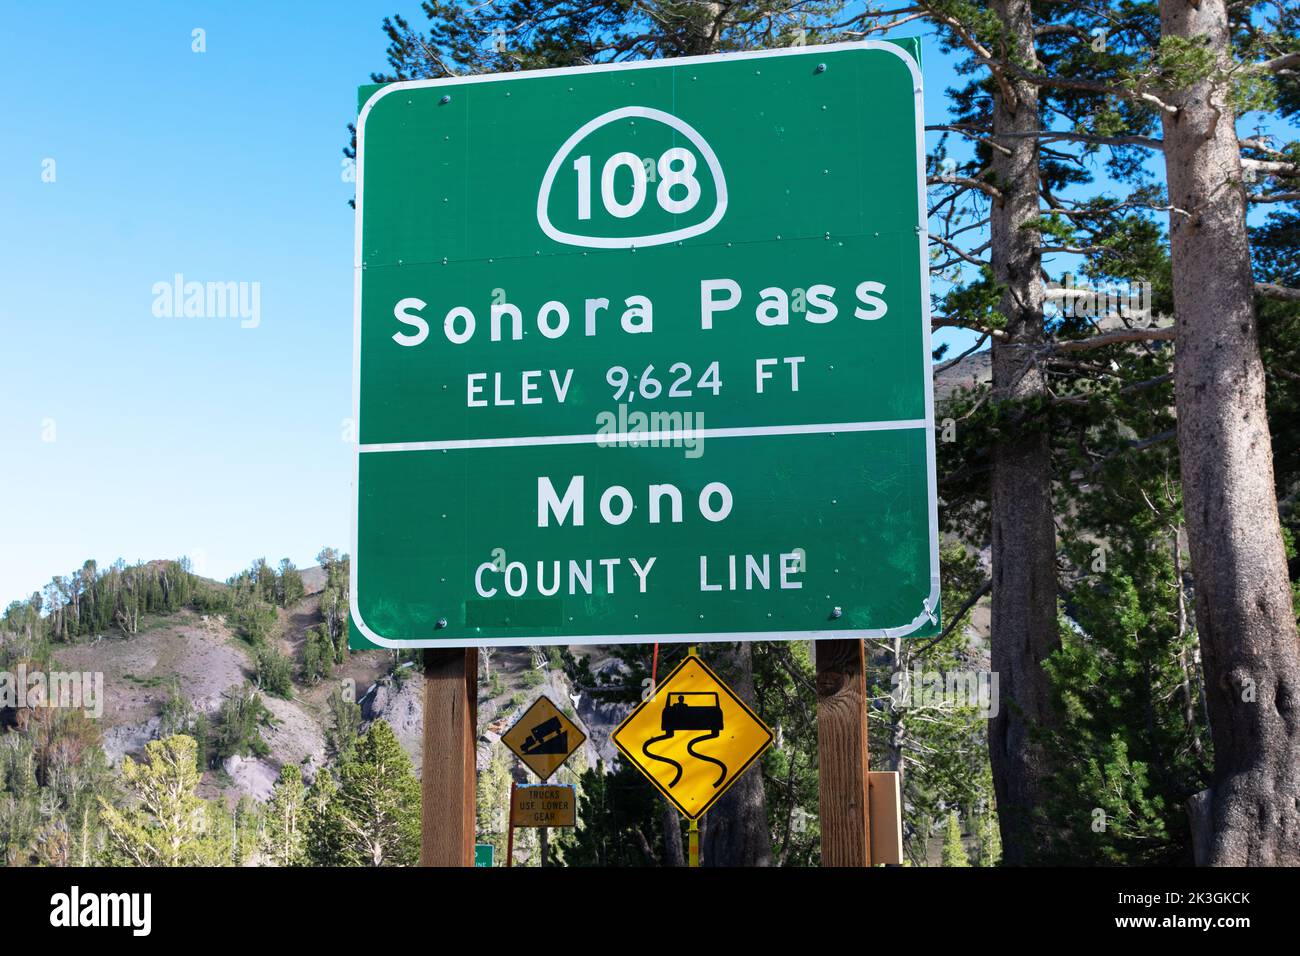 Sonora Pass, cartello stradale alto 9.624 metri sulla panoramica autostrada 108 in California Foto Stock